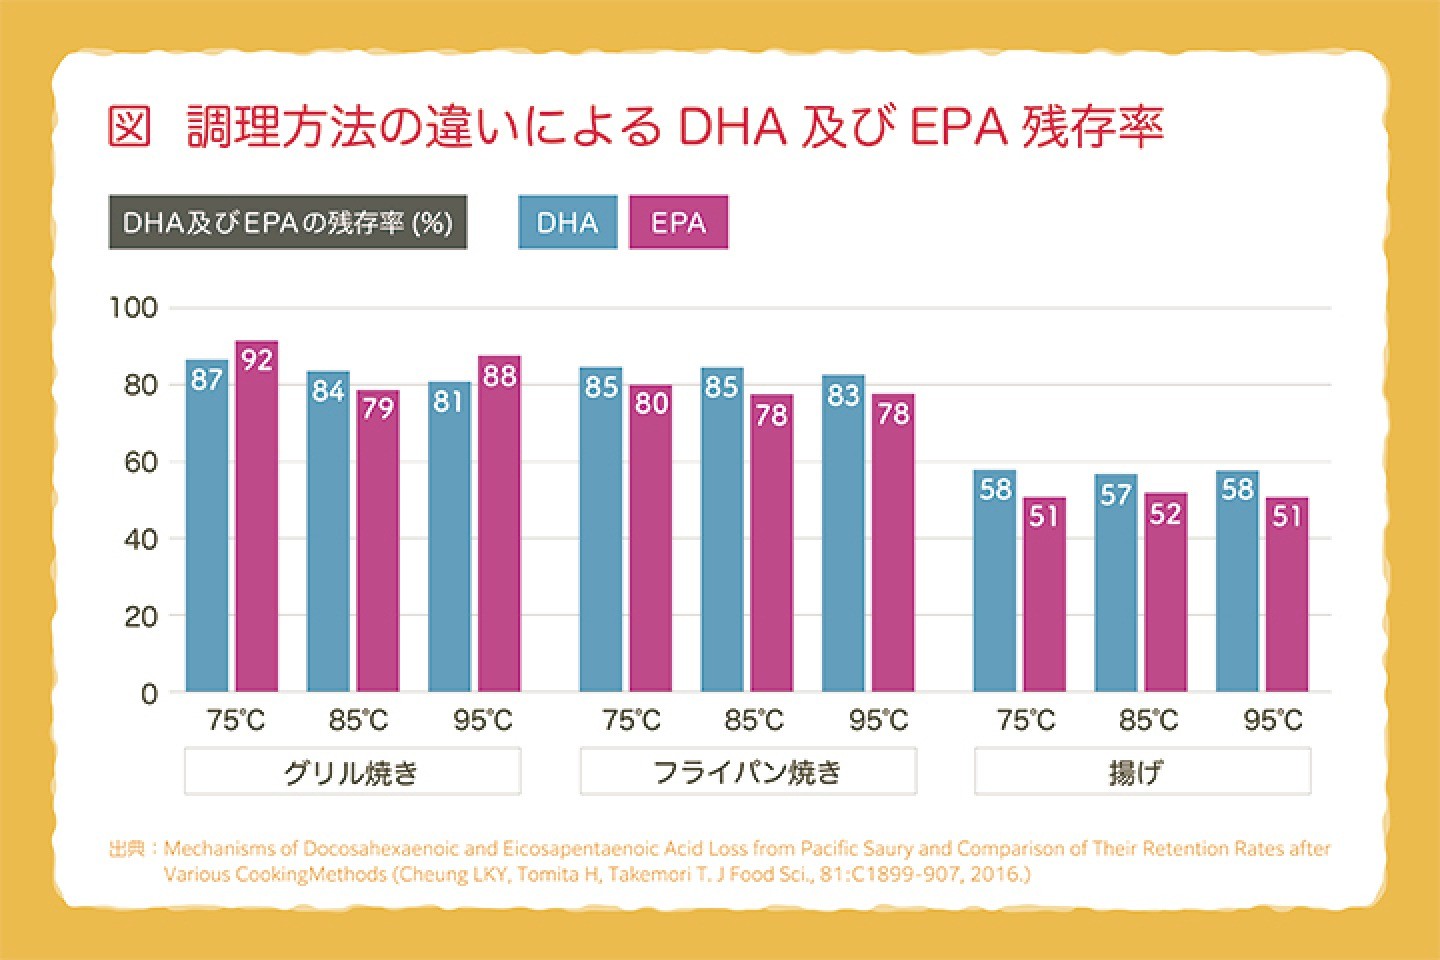 調理方法の違いによるDHAおよびEPA残存率の画像